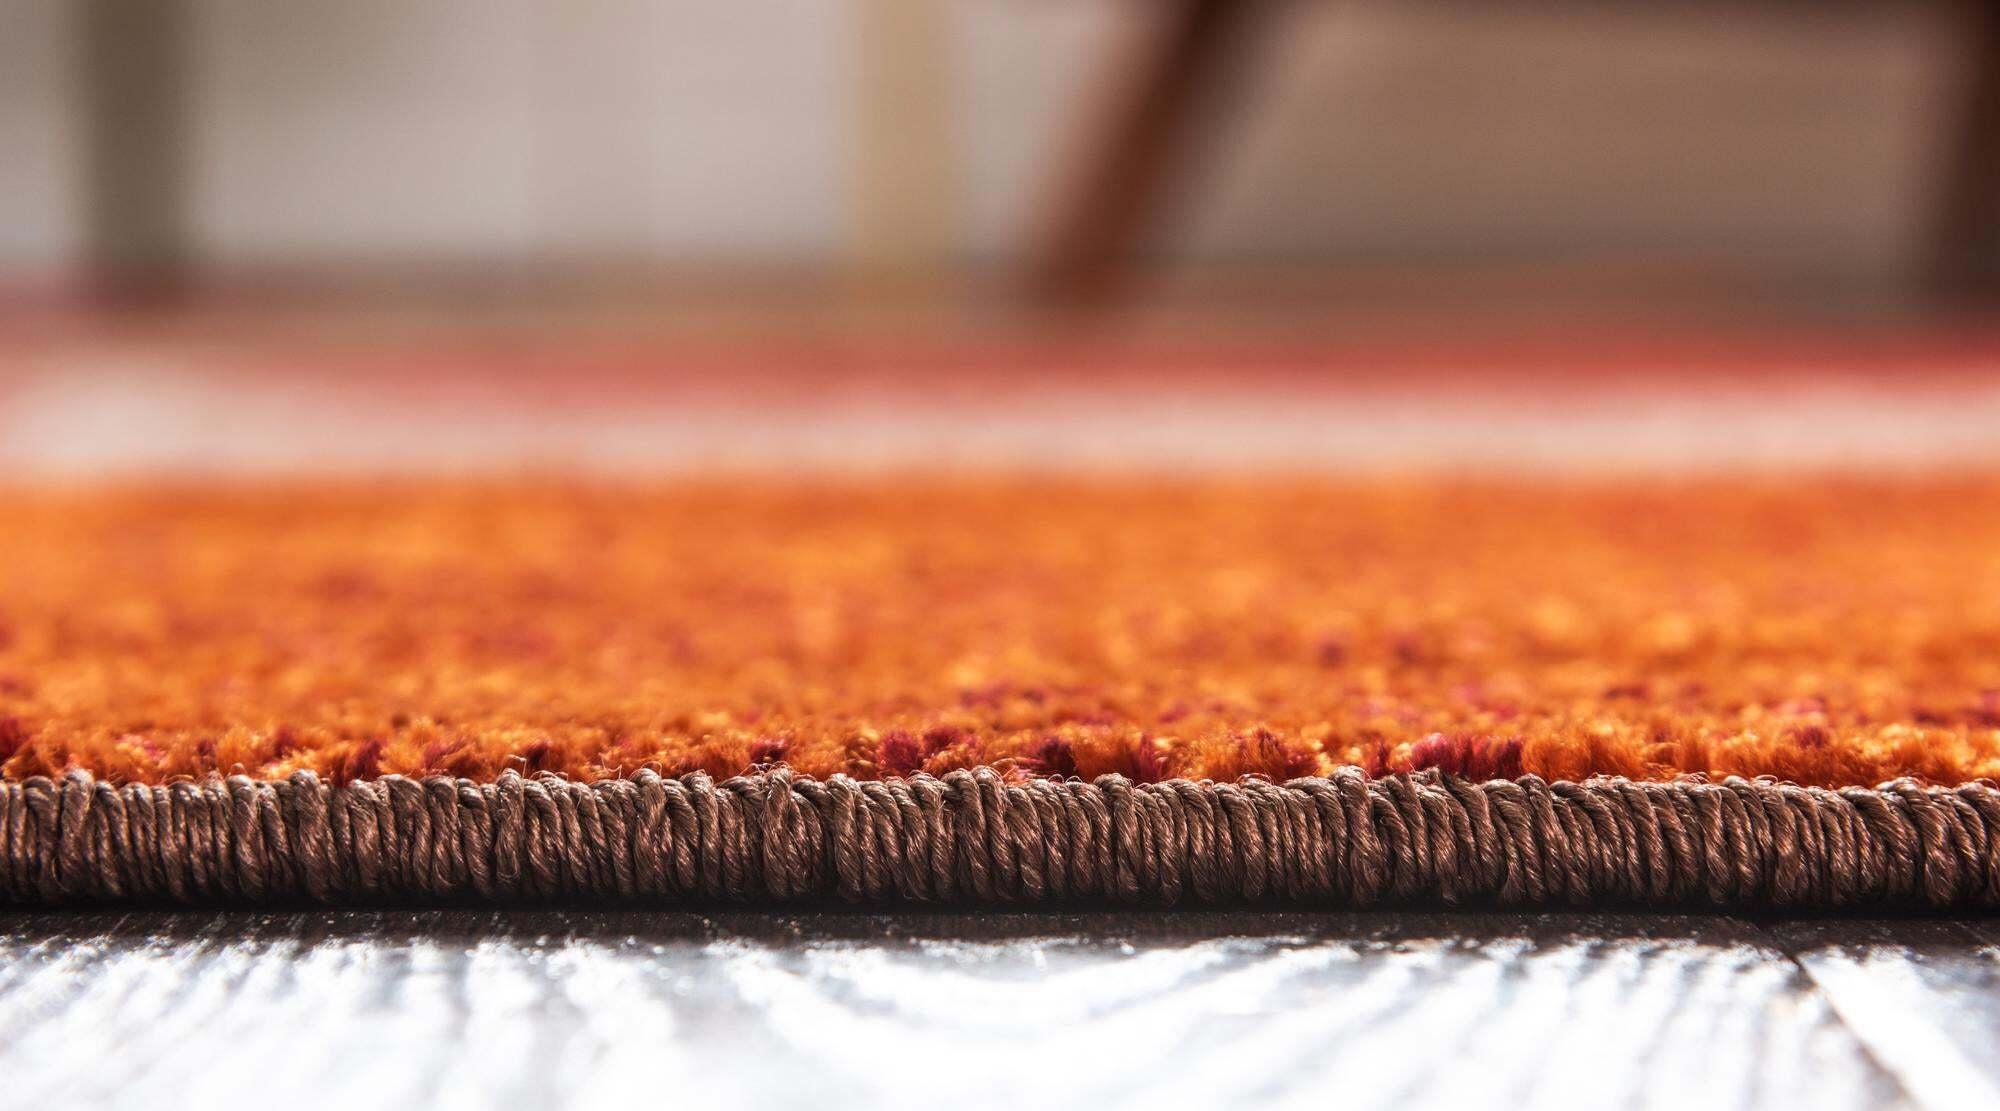 Unique Loom Indoor Rugs - Autumn Geometric Rectangular 8x10 Rug Multi & Dark Brown